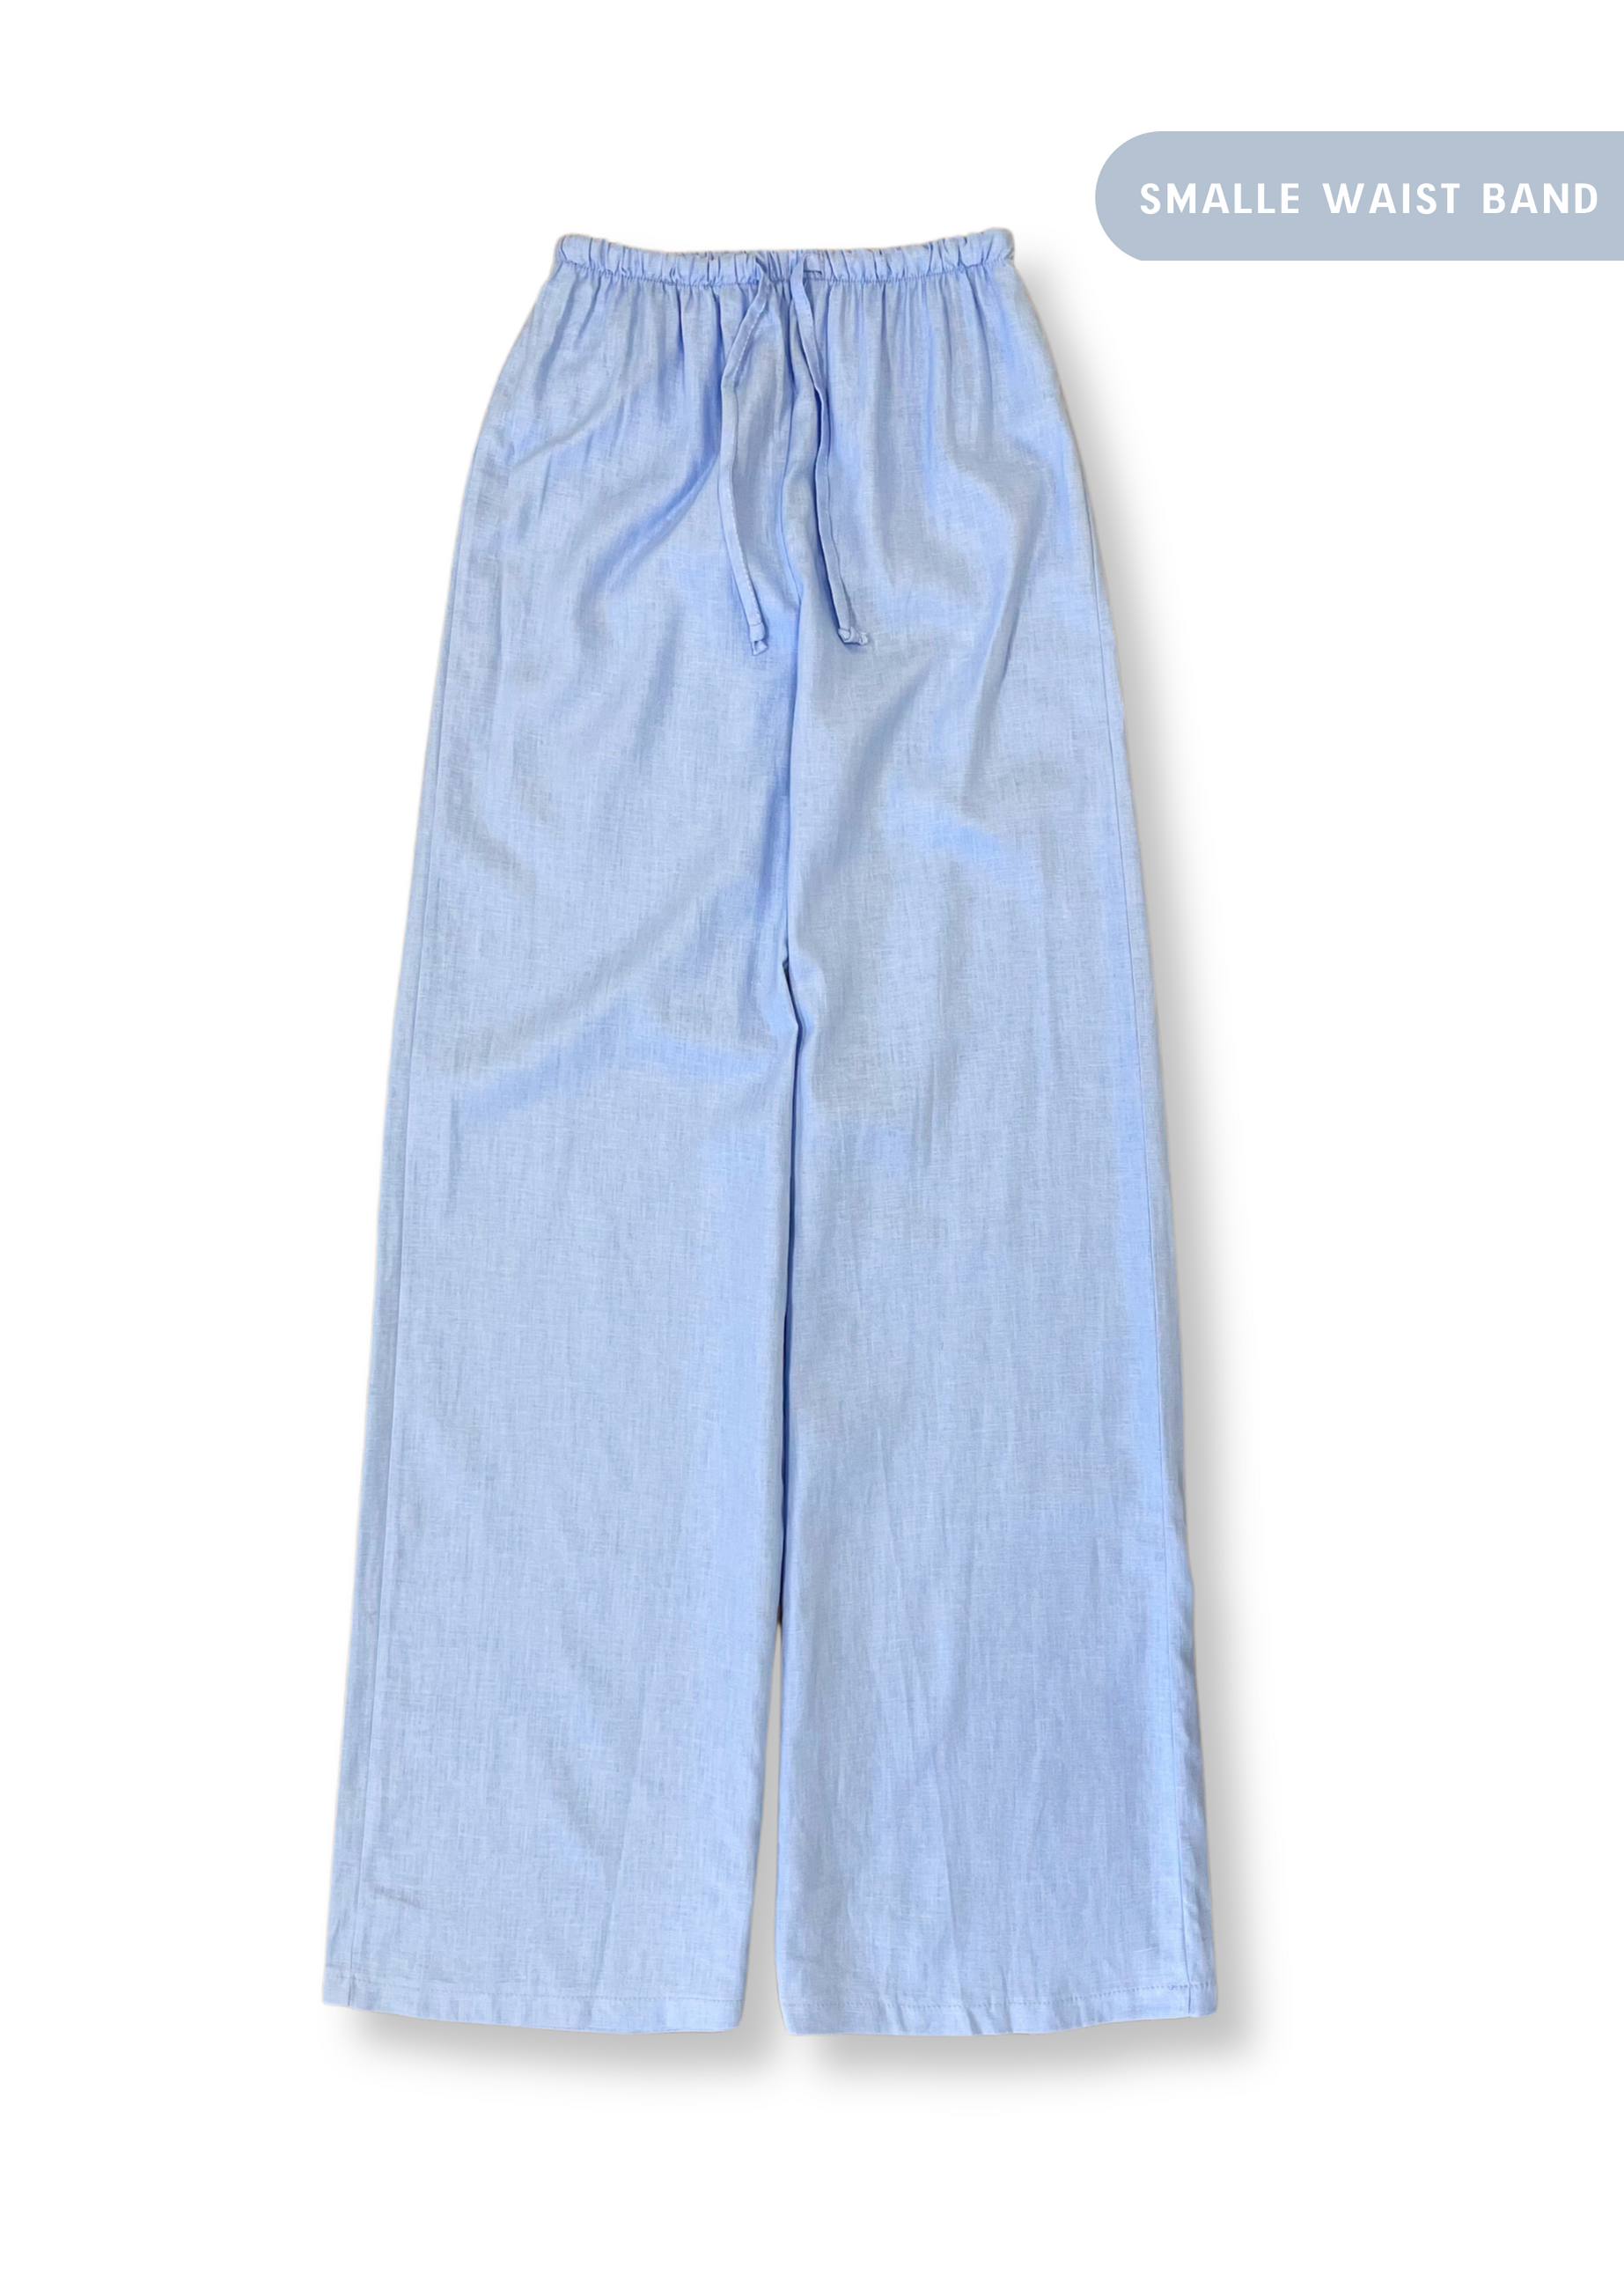 Linen pants small waist band light blue (REGULAR) - Mauré